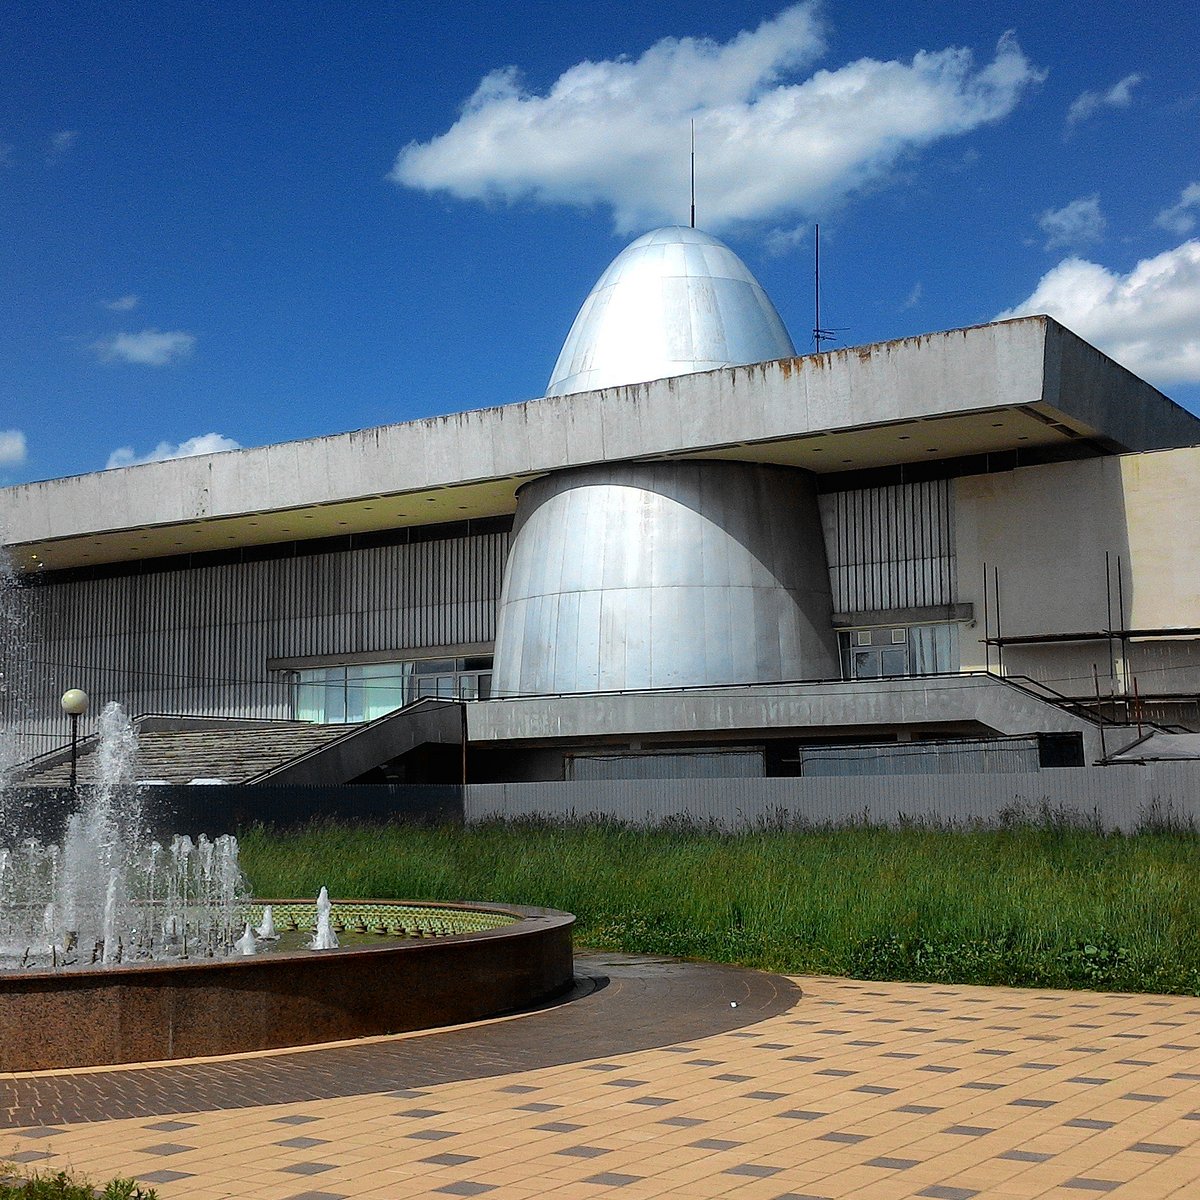 музей космонавтики циолковского в калуге